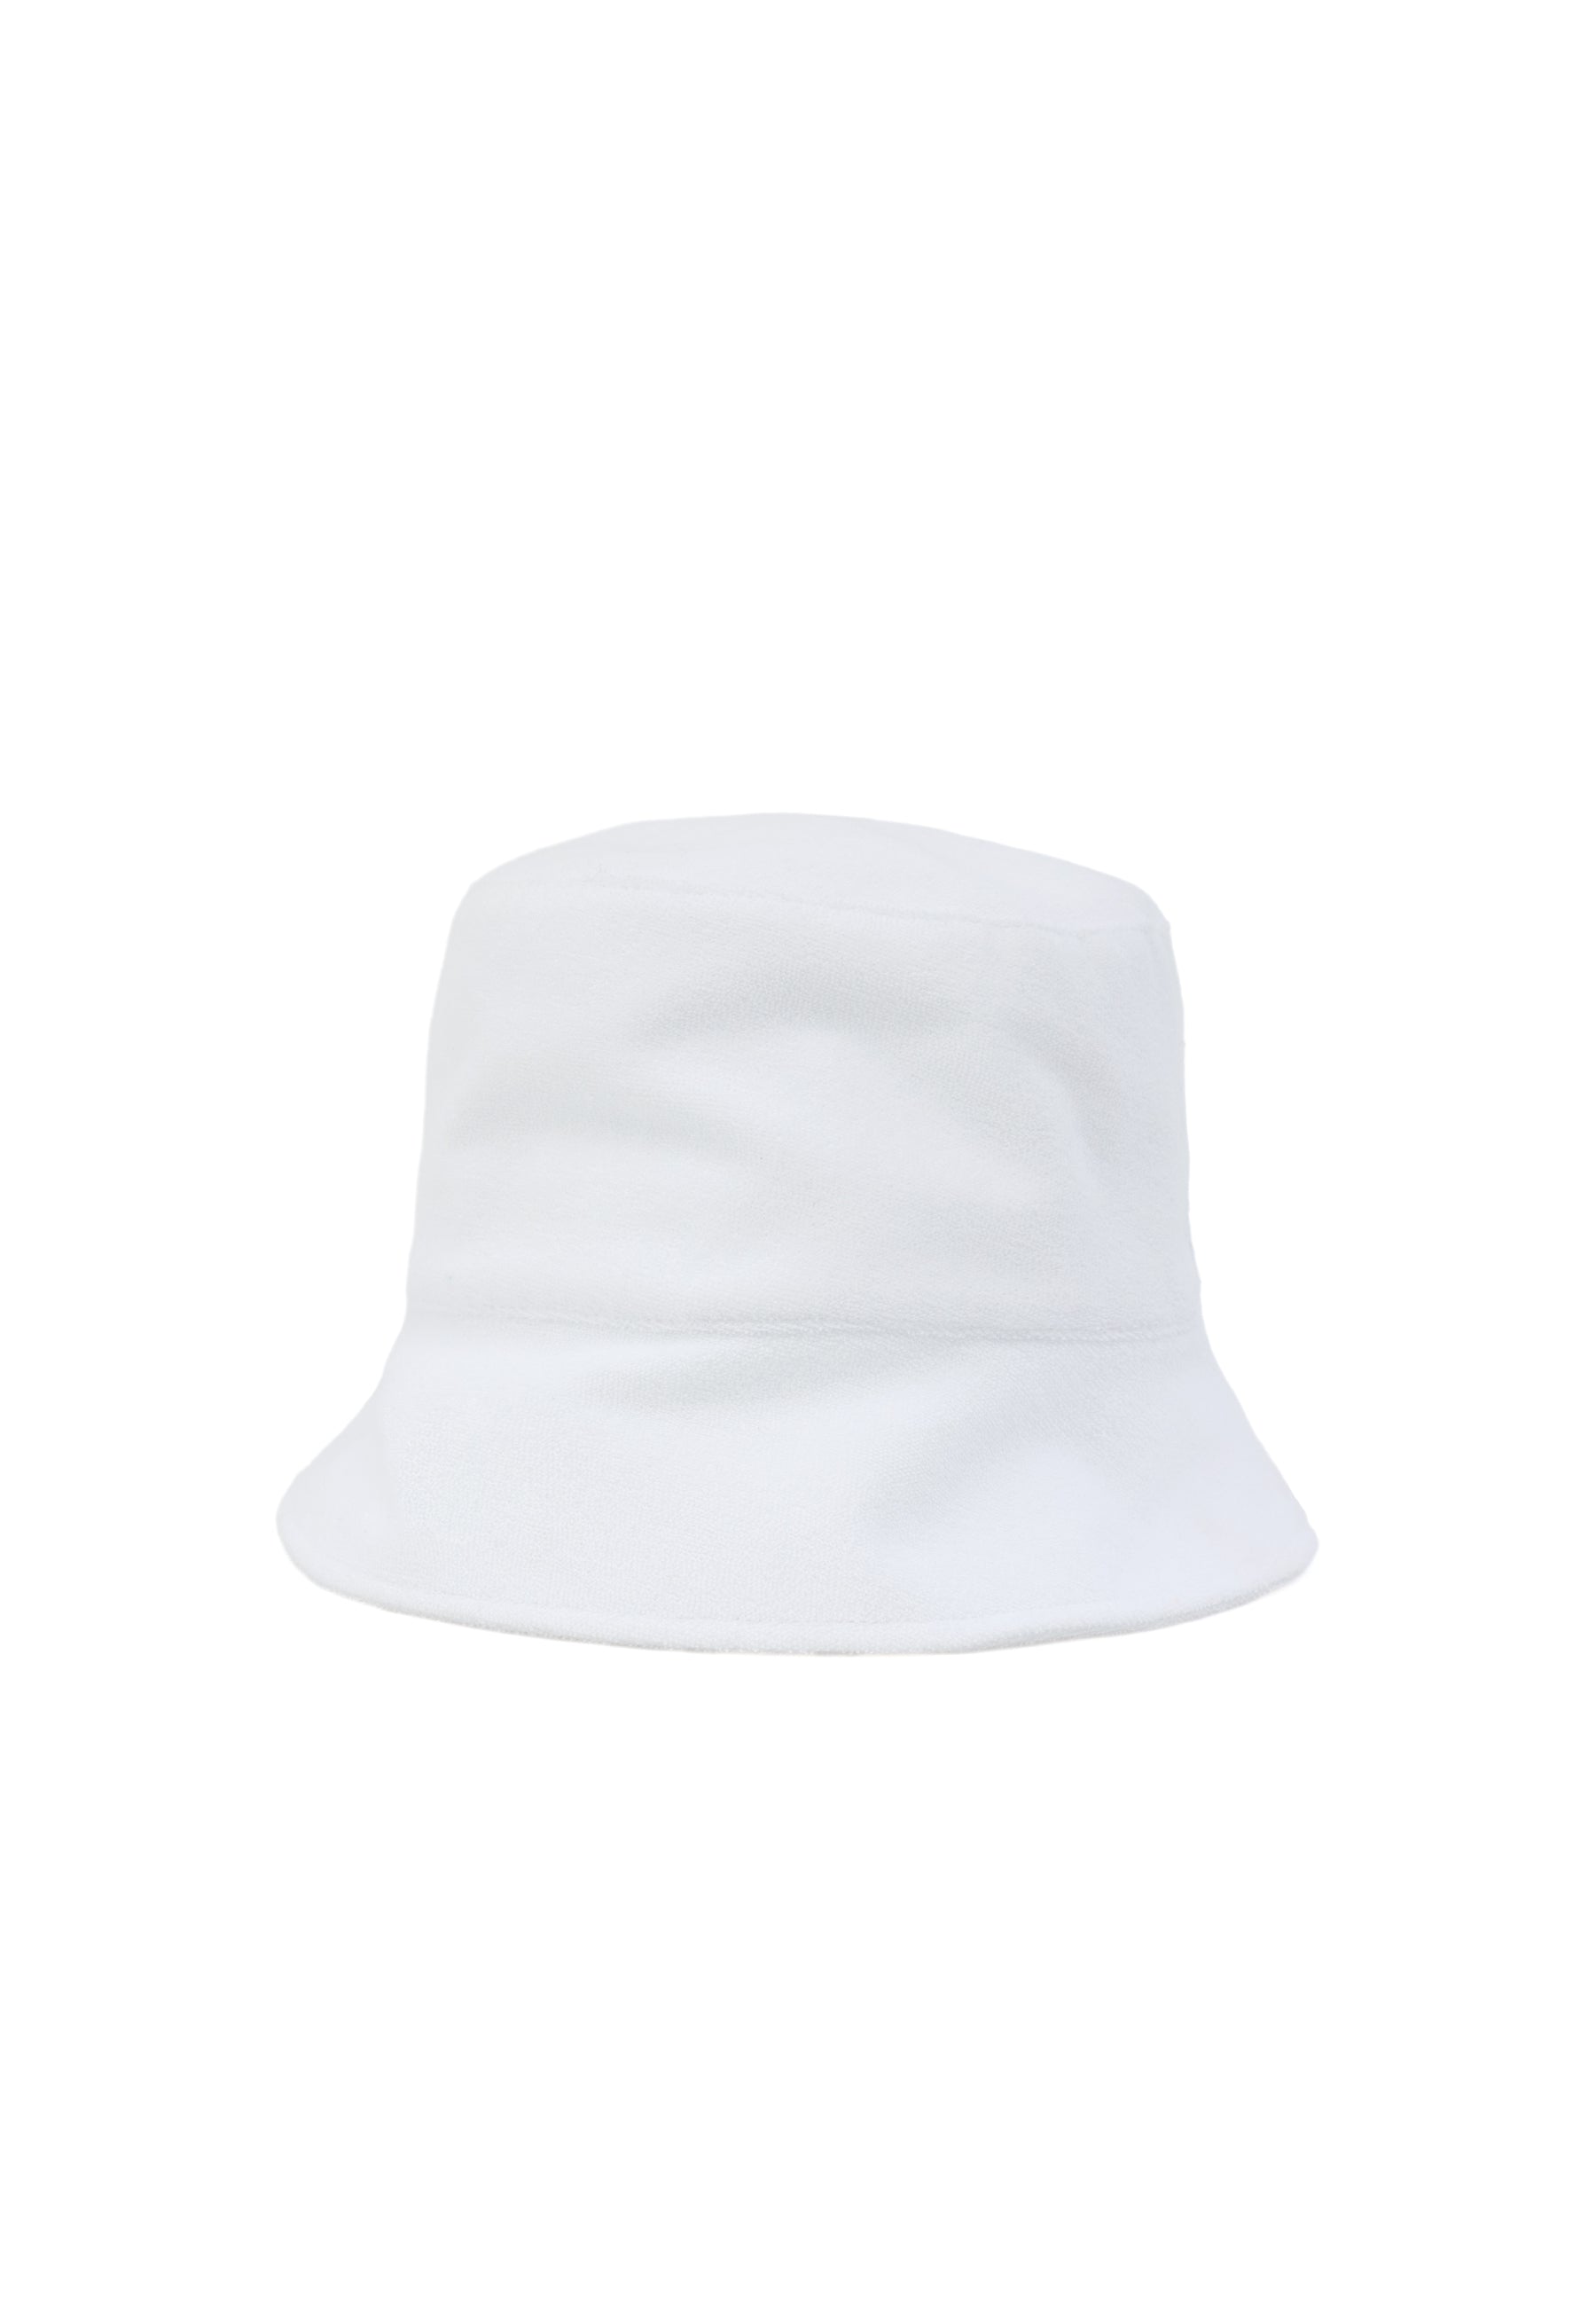 WMTOWEL BUCKET HAT in White